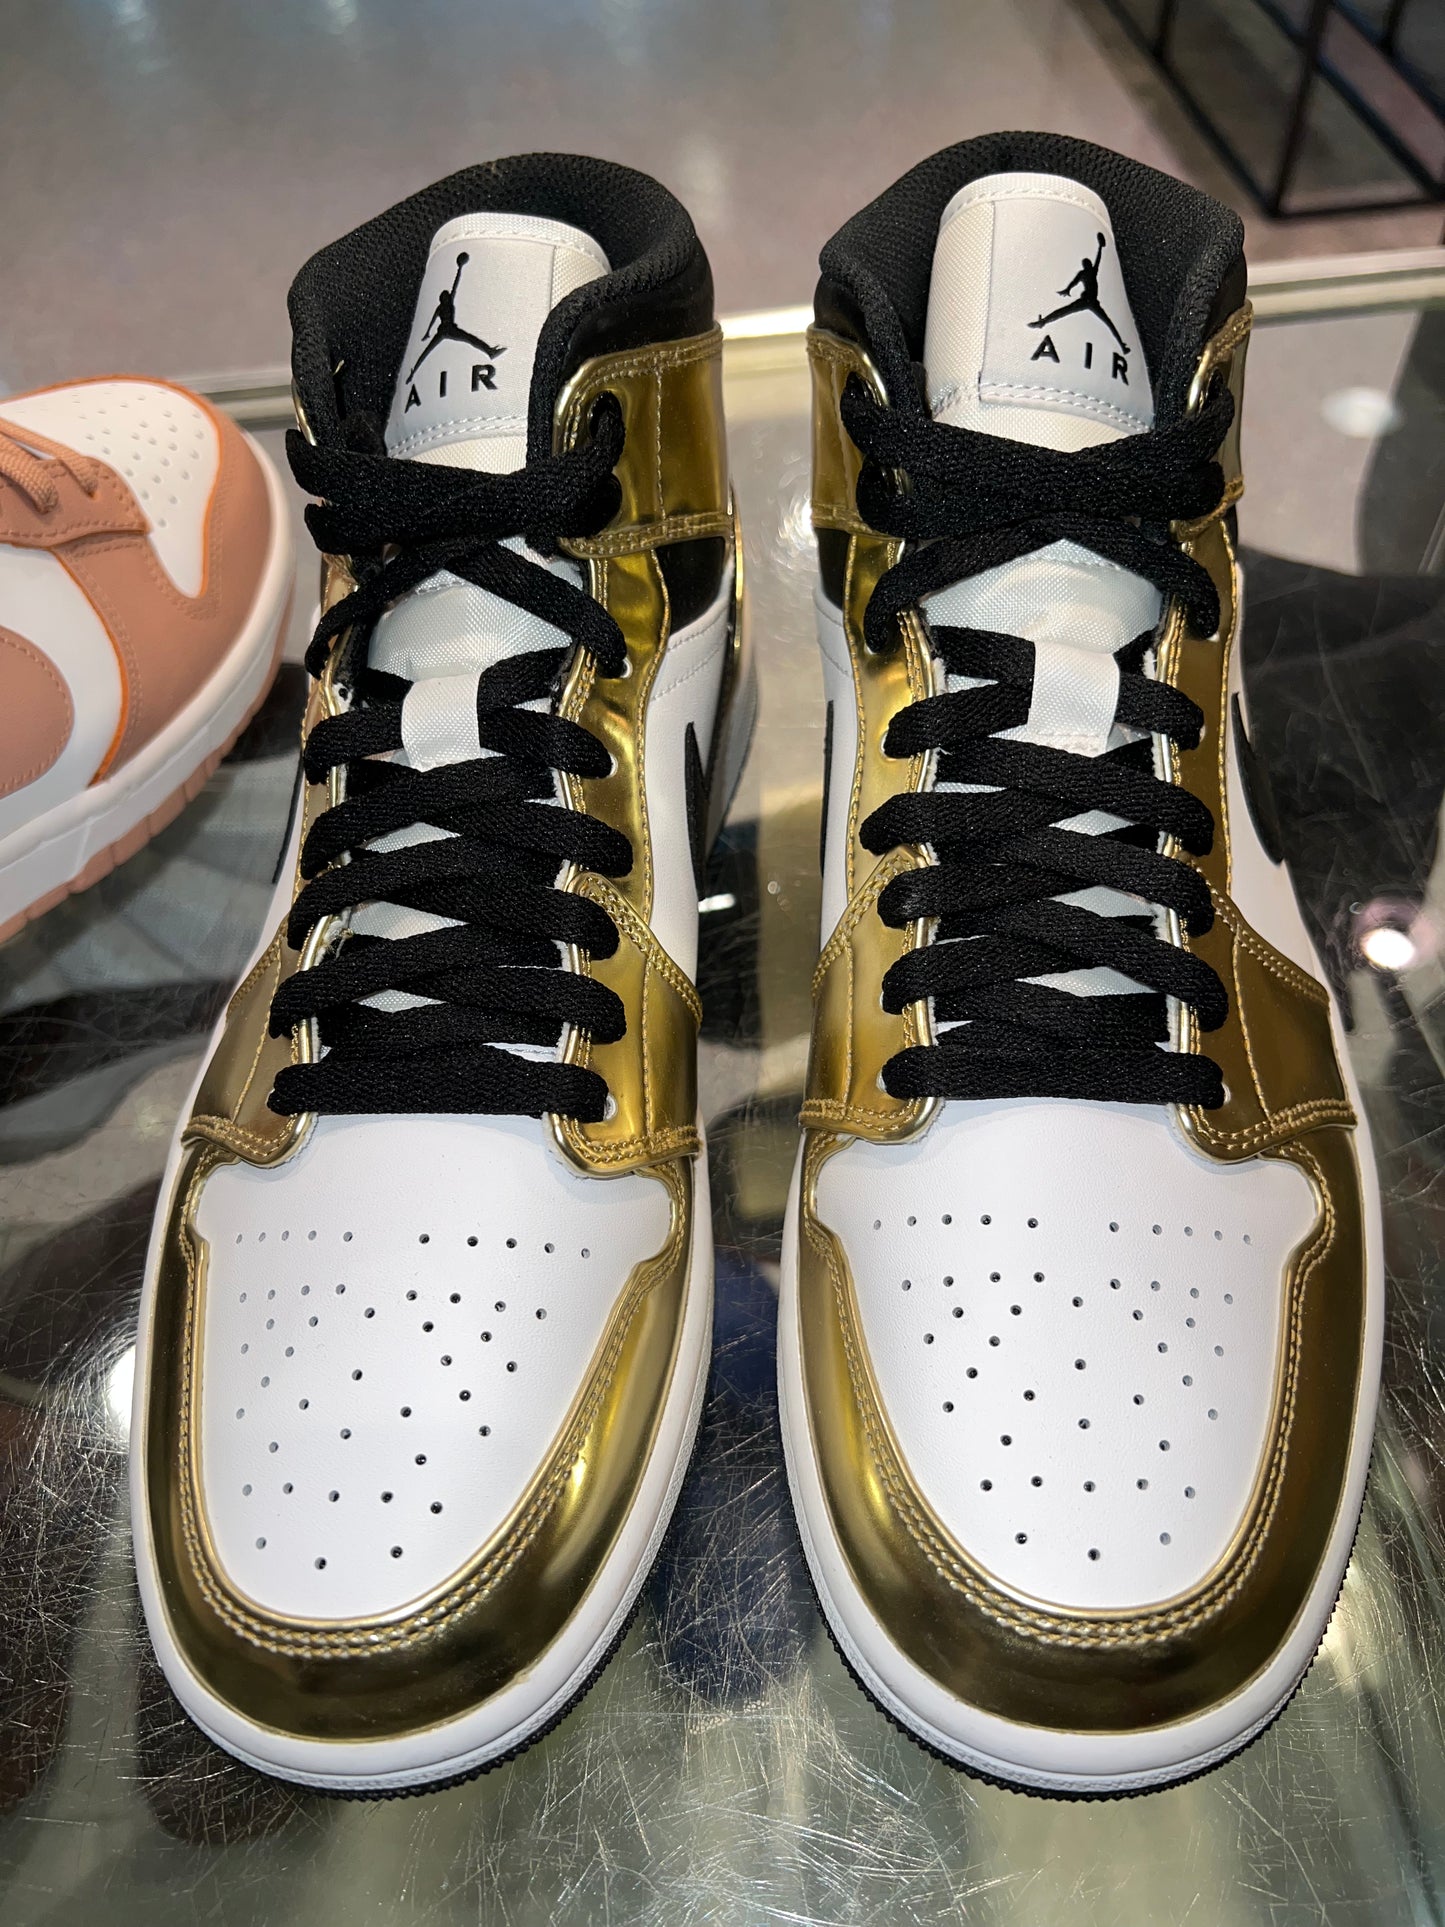 Size 8.5 Air Jordan 1 Mid “Metallic Gold” Brand New (Mall)